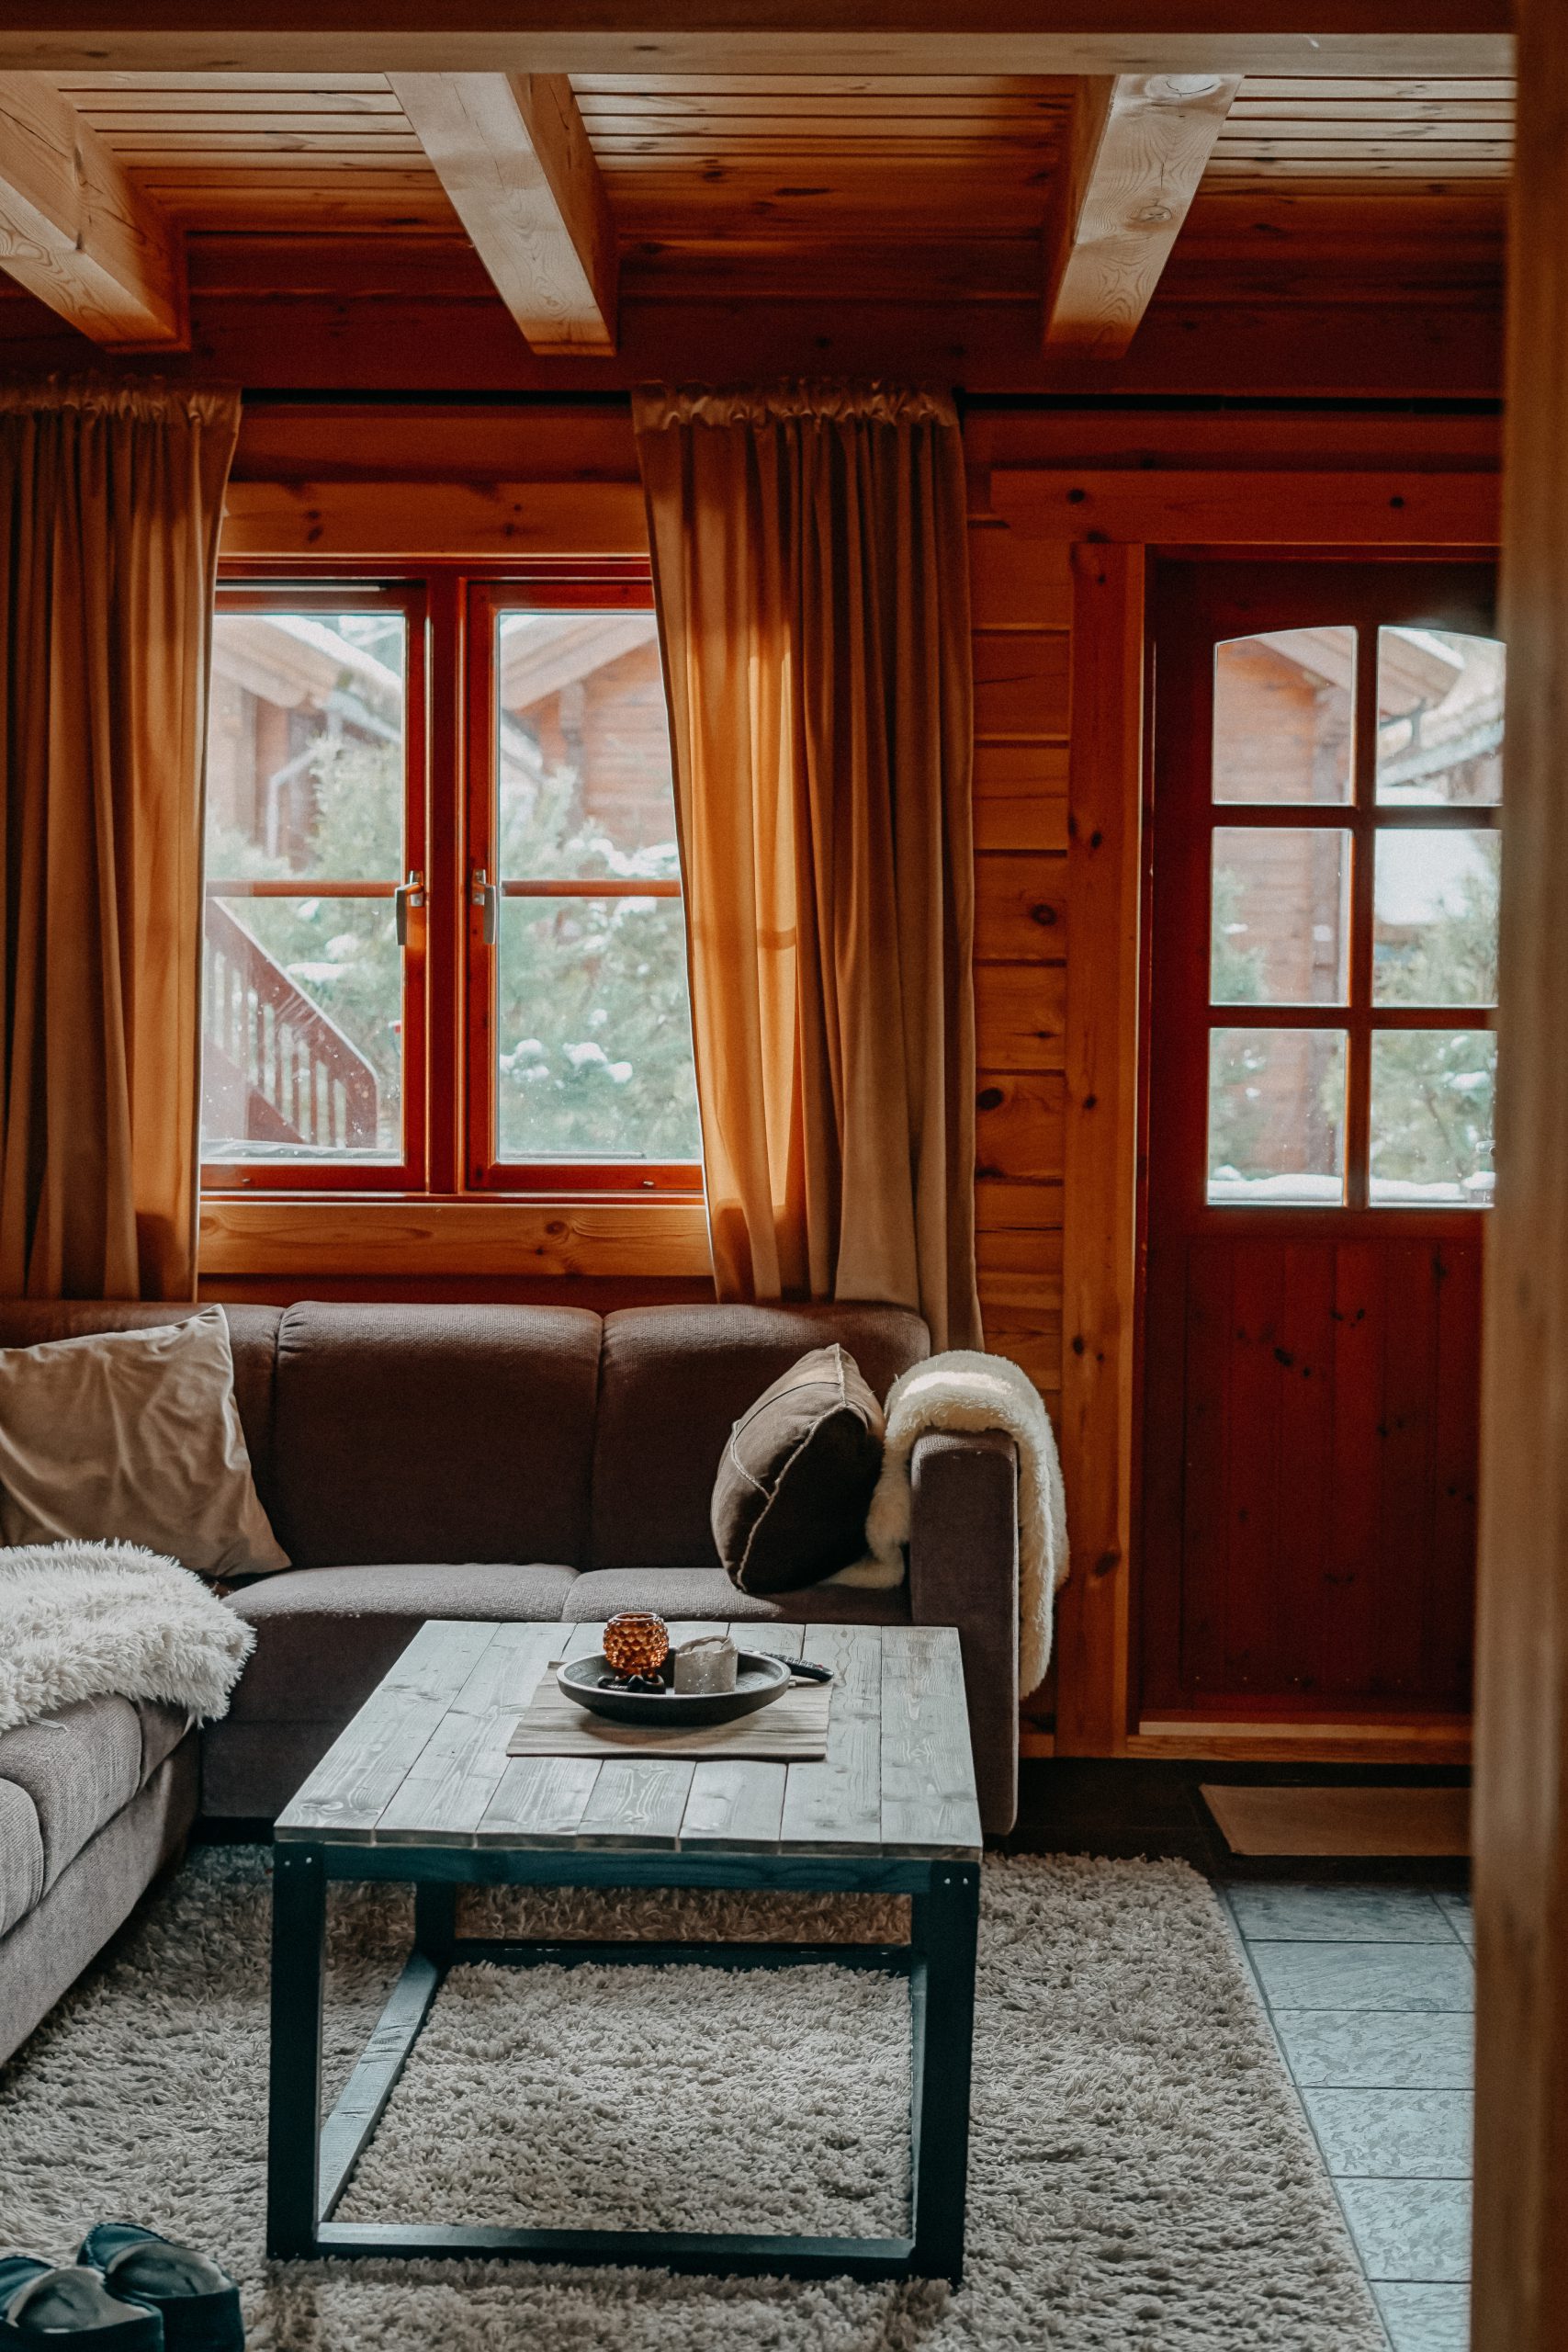 Airbnb Hütte Unterkunft Norwegen Telemark Holzhütte Norwegen Winterurlaub Winterroute Auto Reiseblog Reisen mit Hund Tipps 4